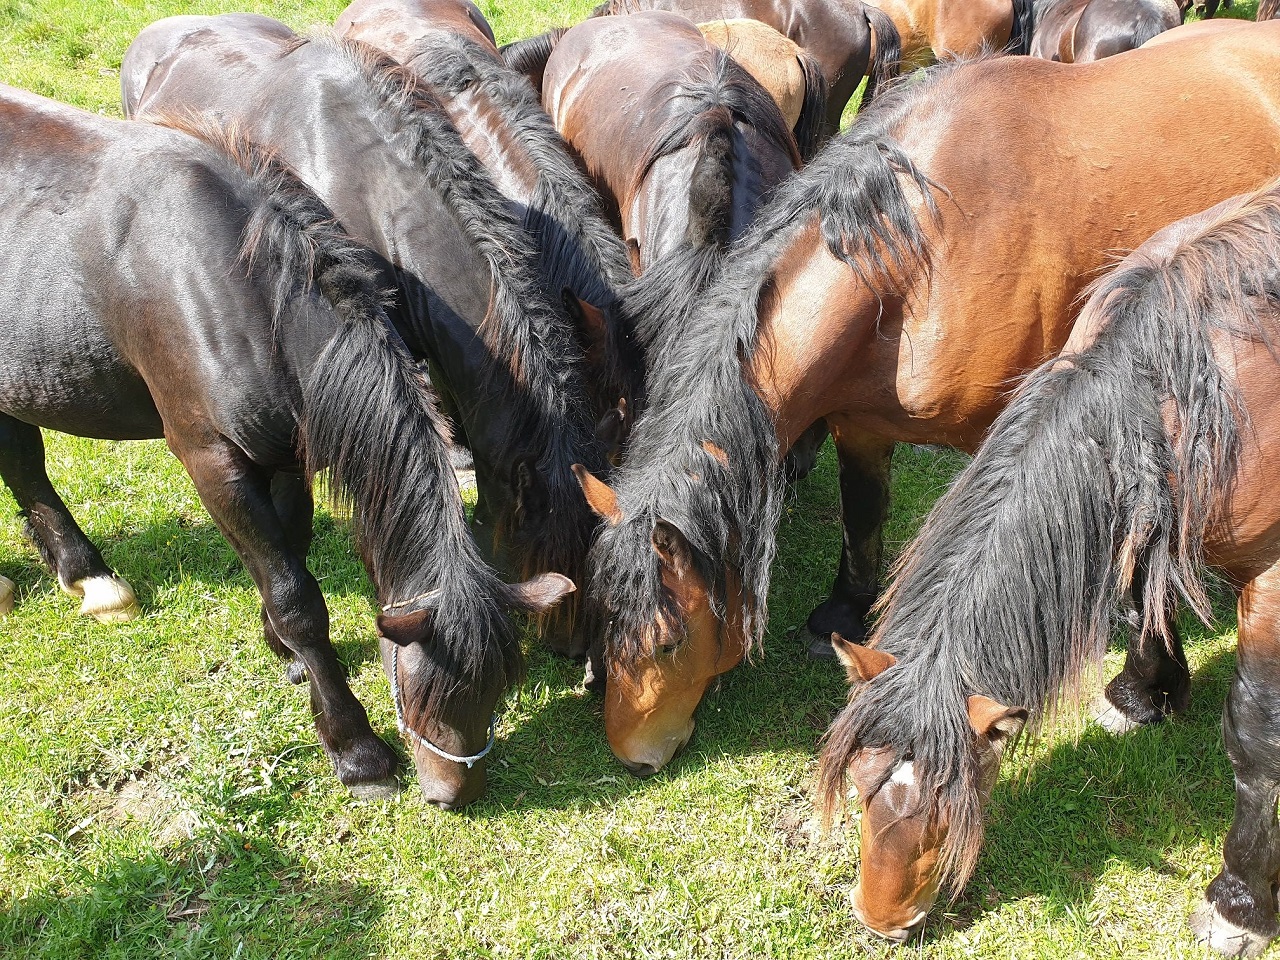 SASKA: Ministri Hegerovej vlády budú mať na svedomí vyhynutie chráneného plemena koňa